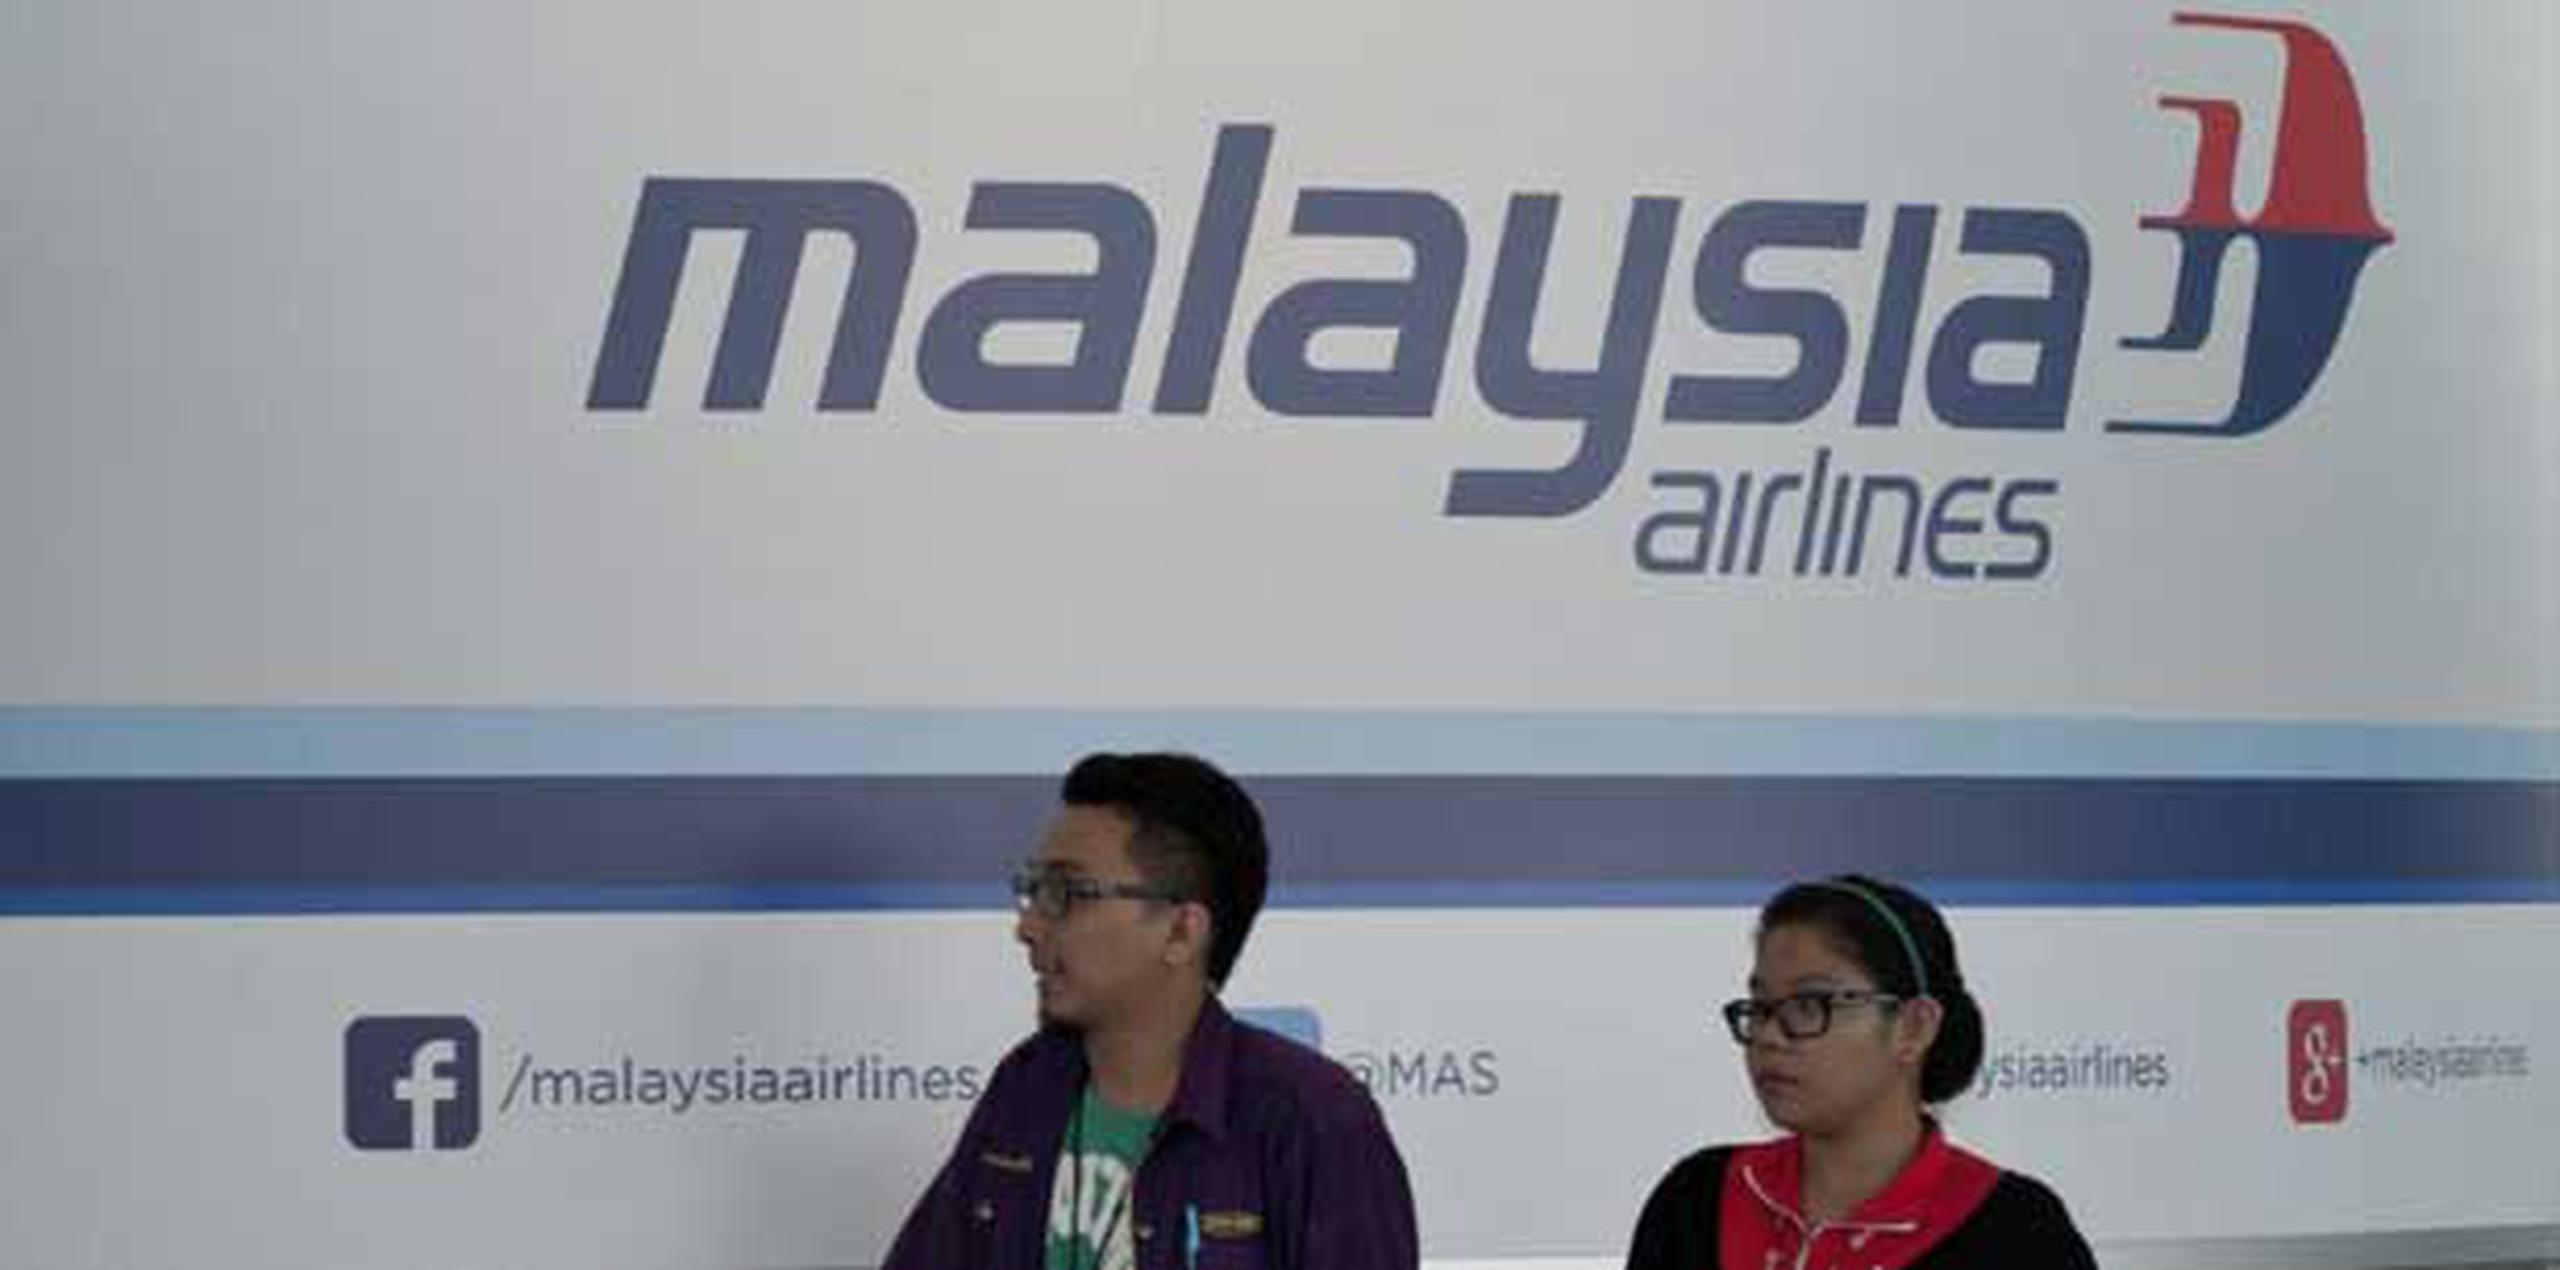 El vuelo MH370 de Malaysia Airlines desapareció sin que hasta el momento se tenga certeza de dónde se encuentra.  (AFP/Mohd Rasfan)